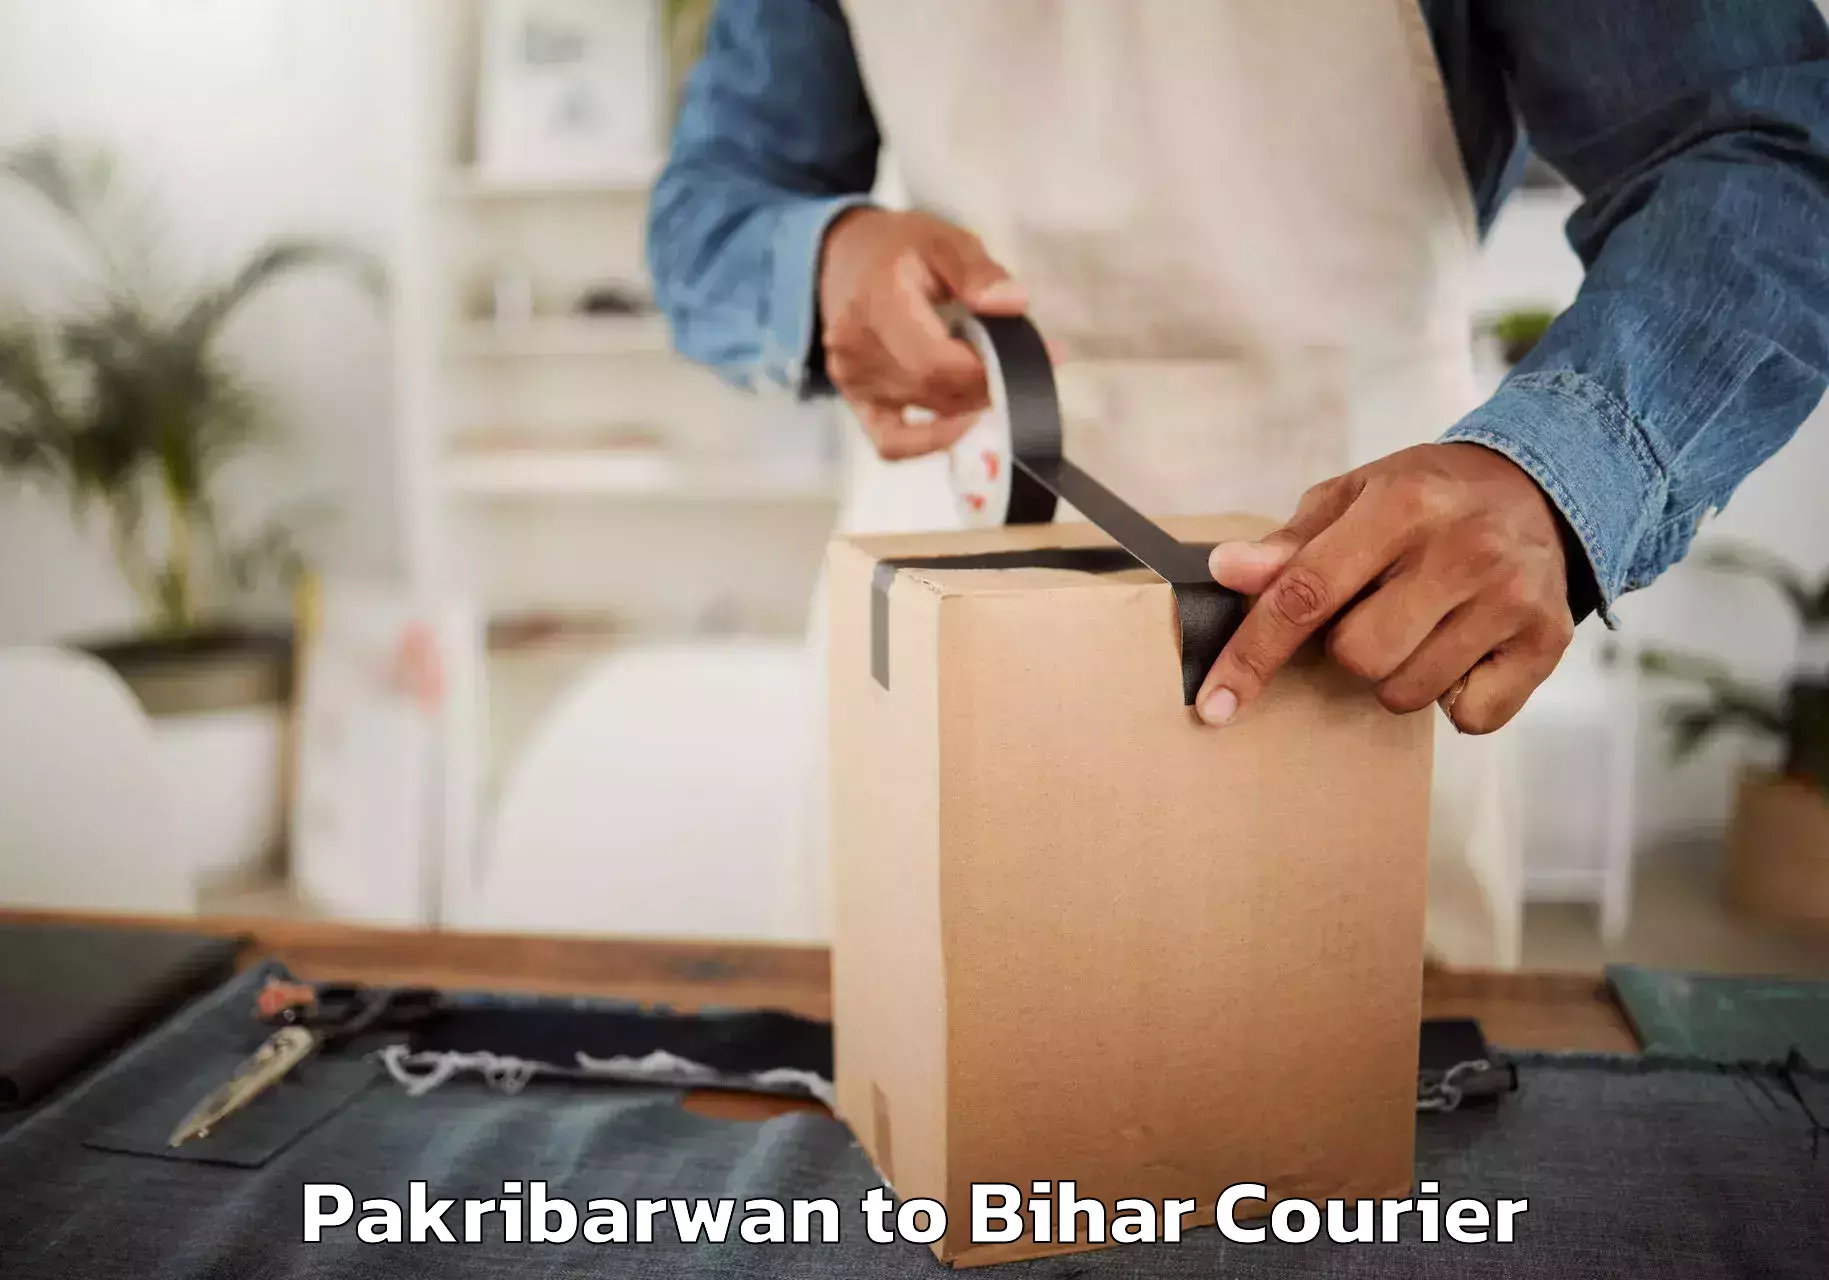 Furniture transport experts Pakribarwan to Kamtaul